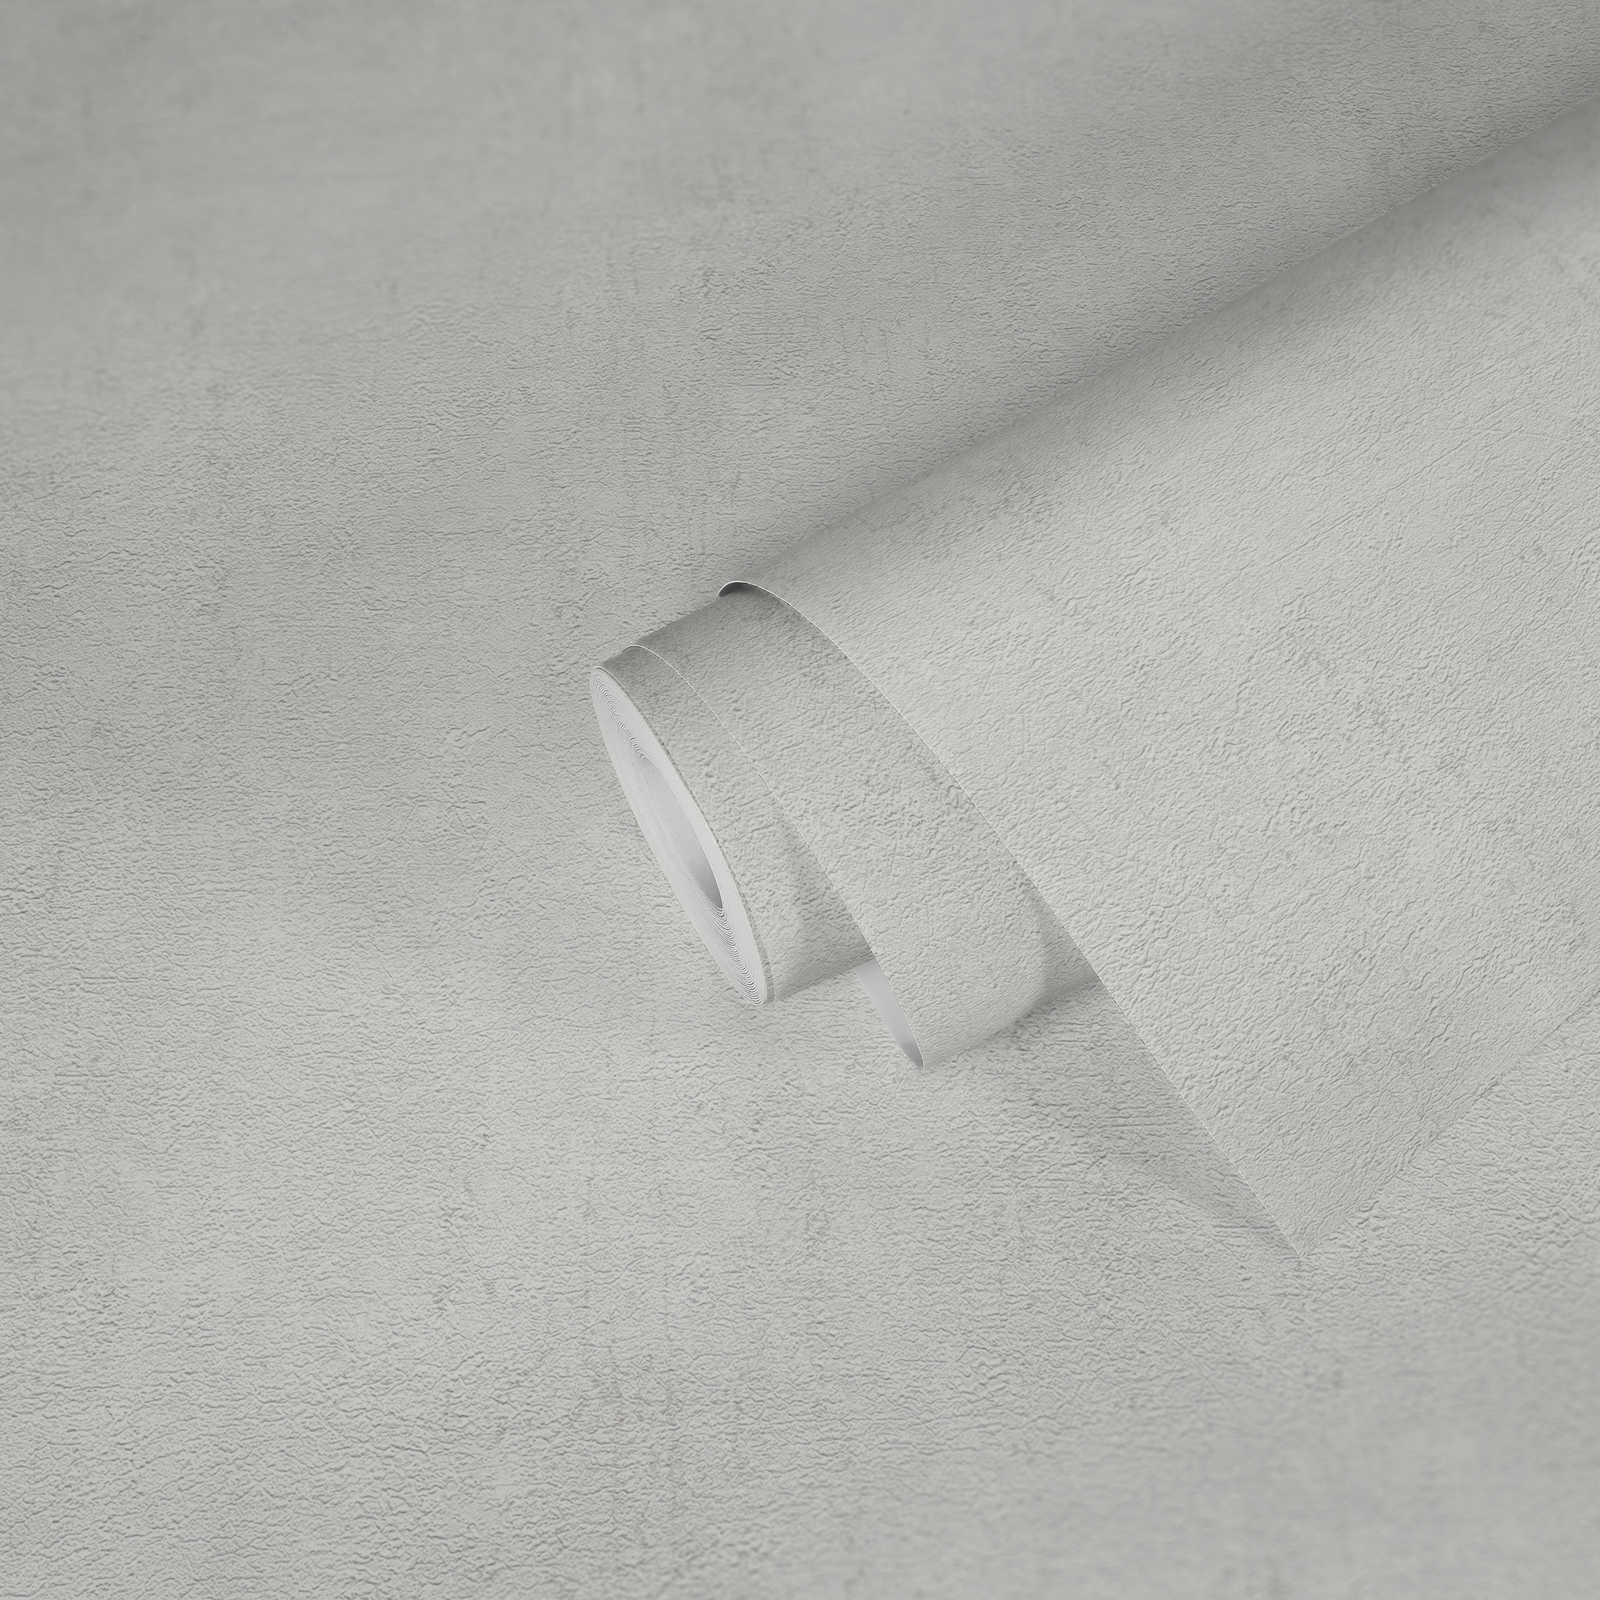             Non-woven wallpaper plain with matt-gloss effect - grey, white
        